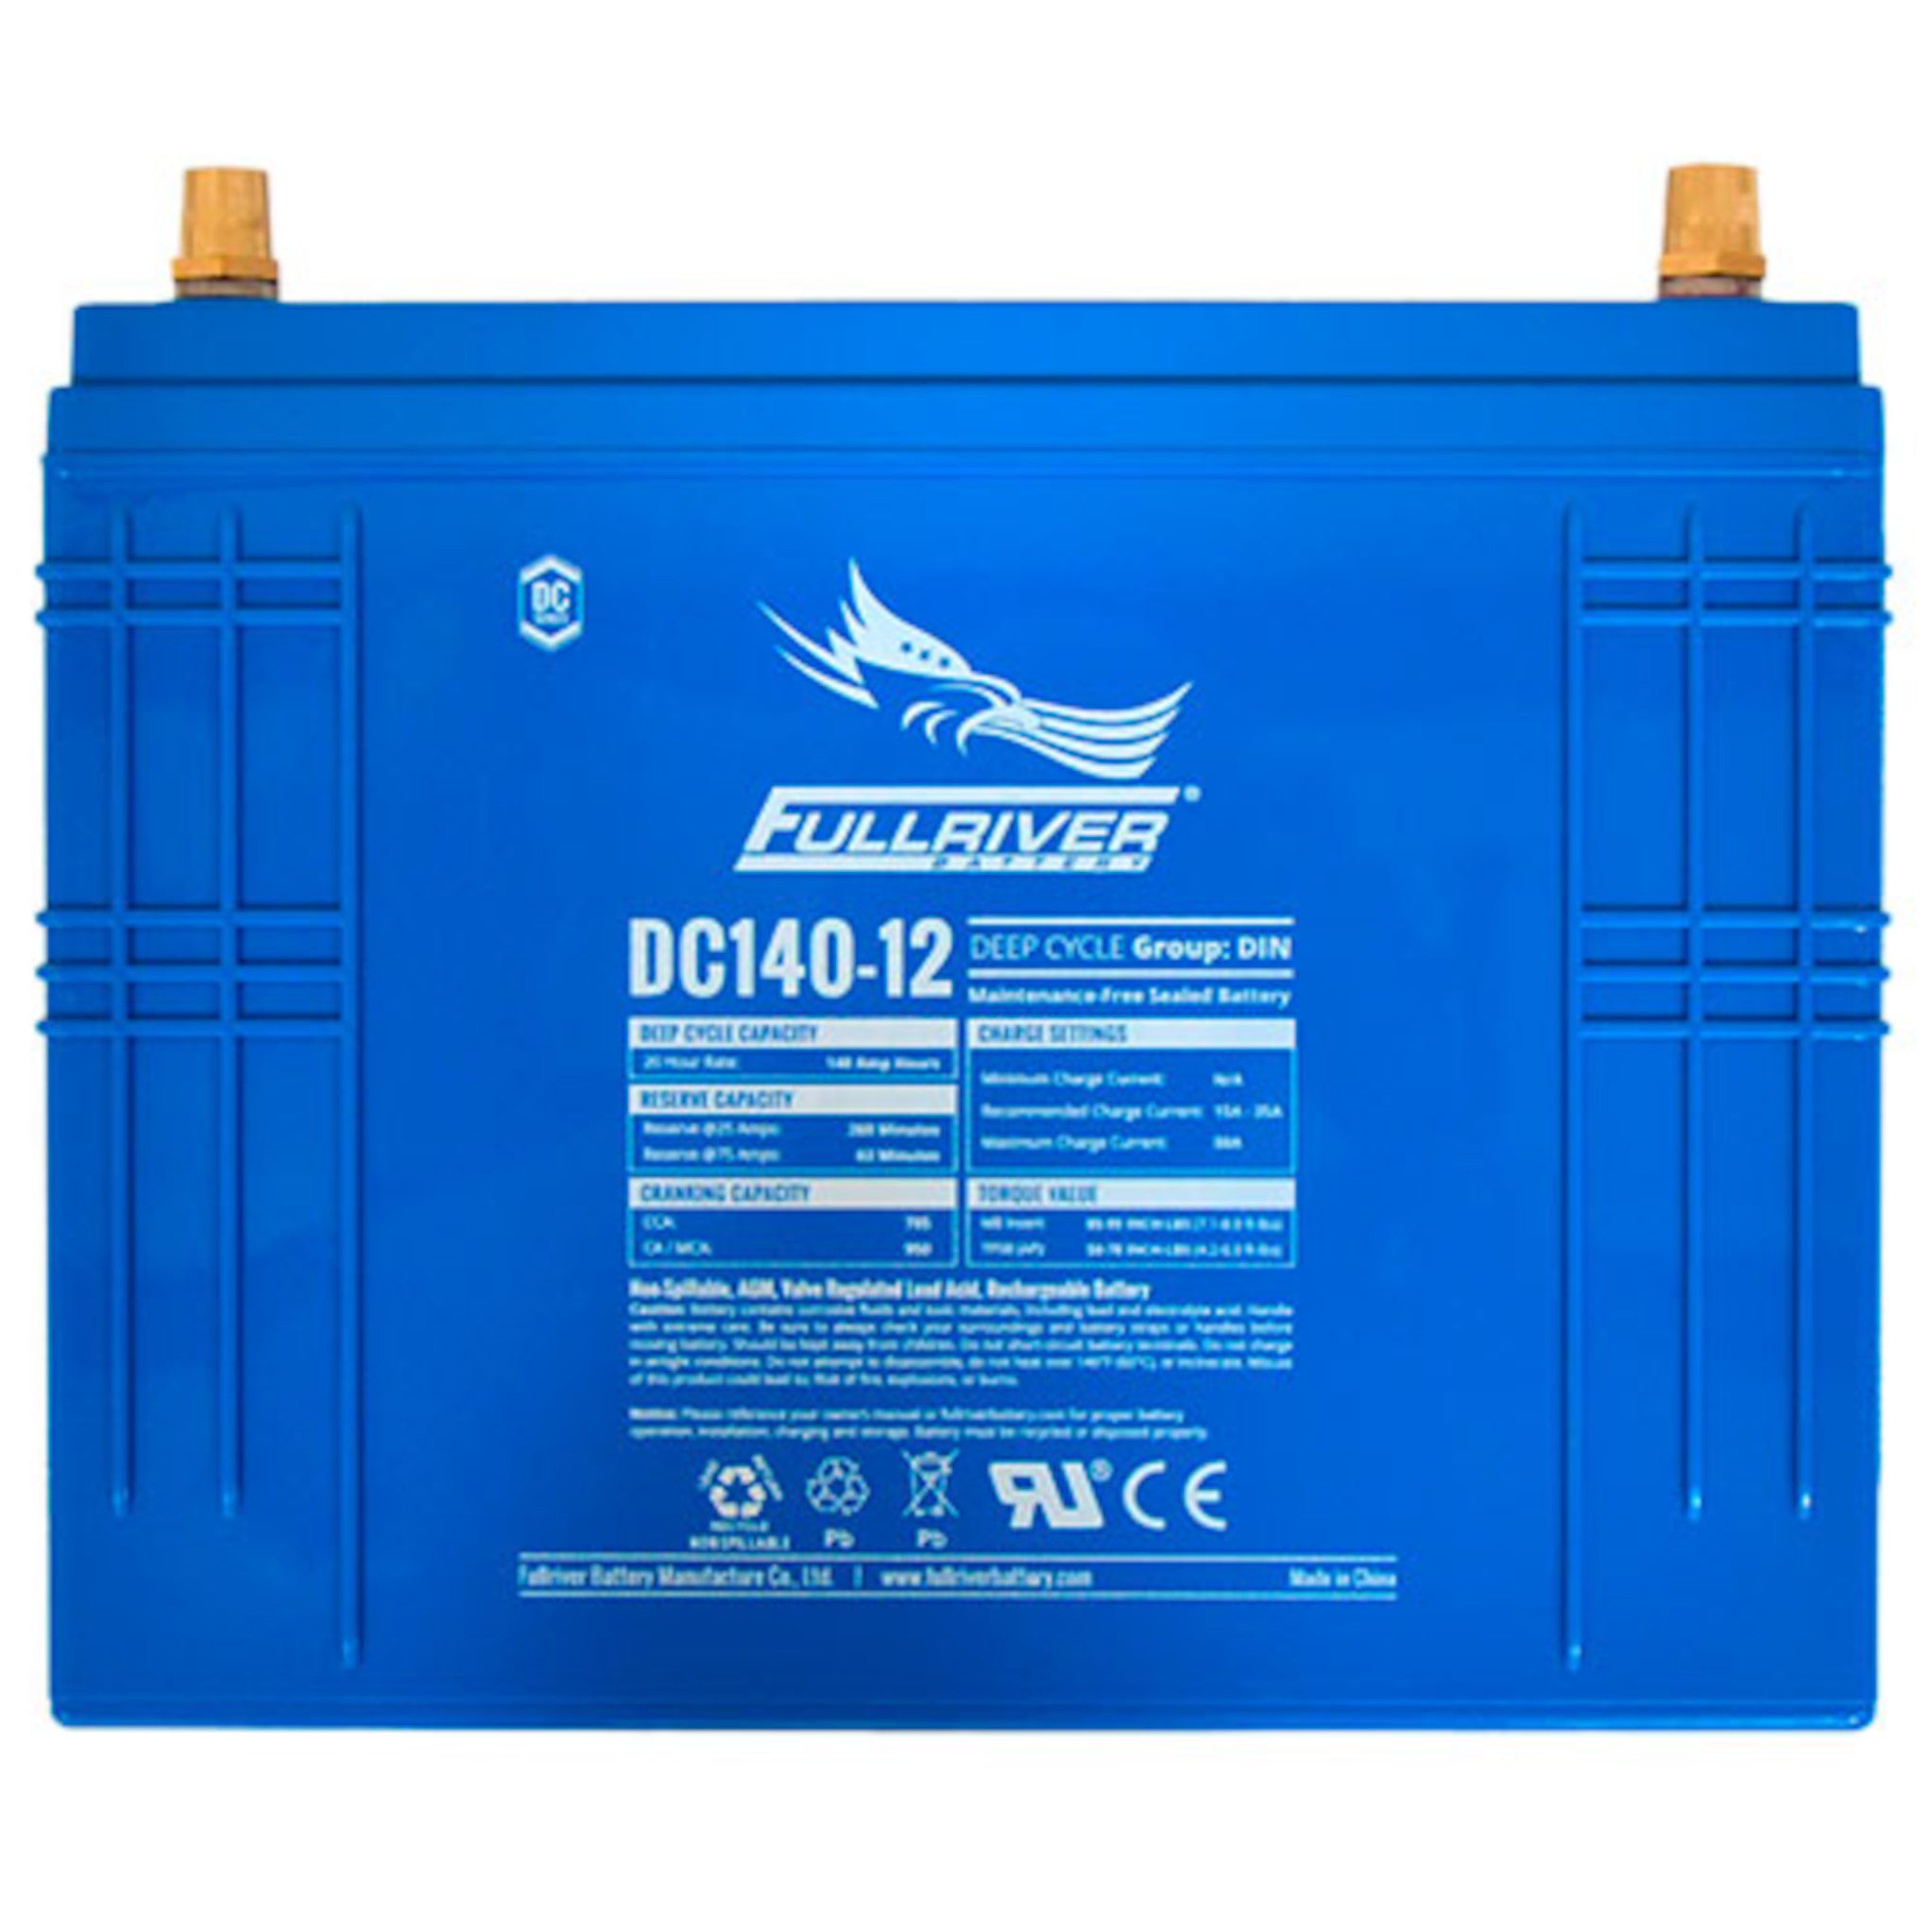 Fullriver DC140-12 AGM Battery